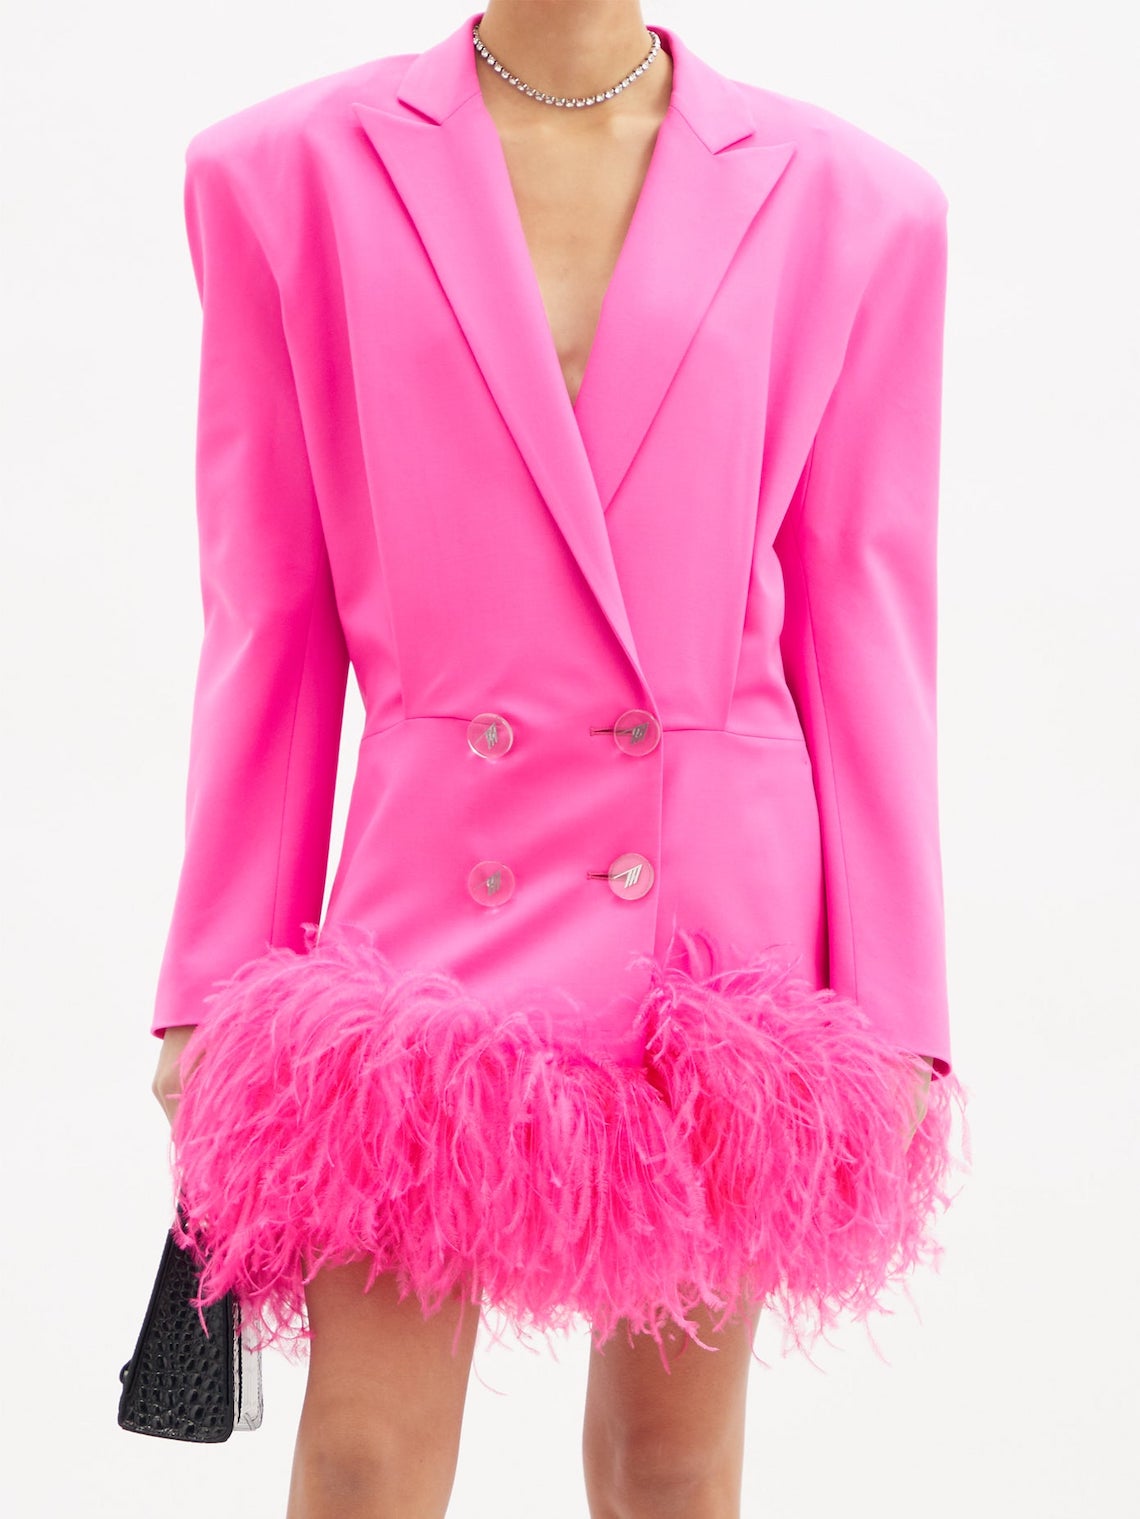 The Attico Feather Trimmed Mini Blazer Wedding Dress Best Pink Wedding Dresses for 2021 2022 Brides Bridal Musings 1 - 30 chiếc áo dài cưới màu hồng dành cho cô dâu yêu thích sắc màu